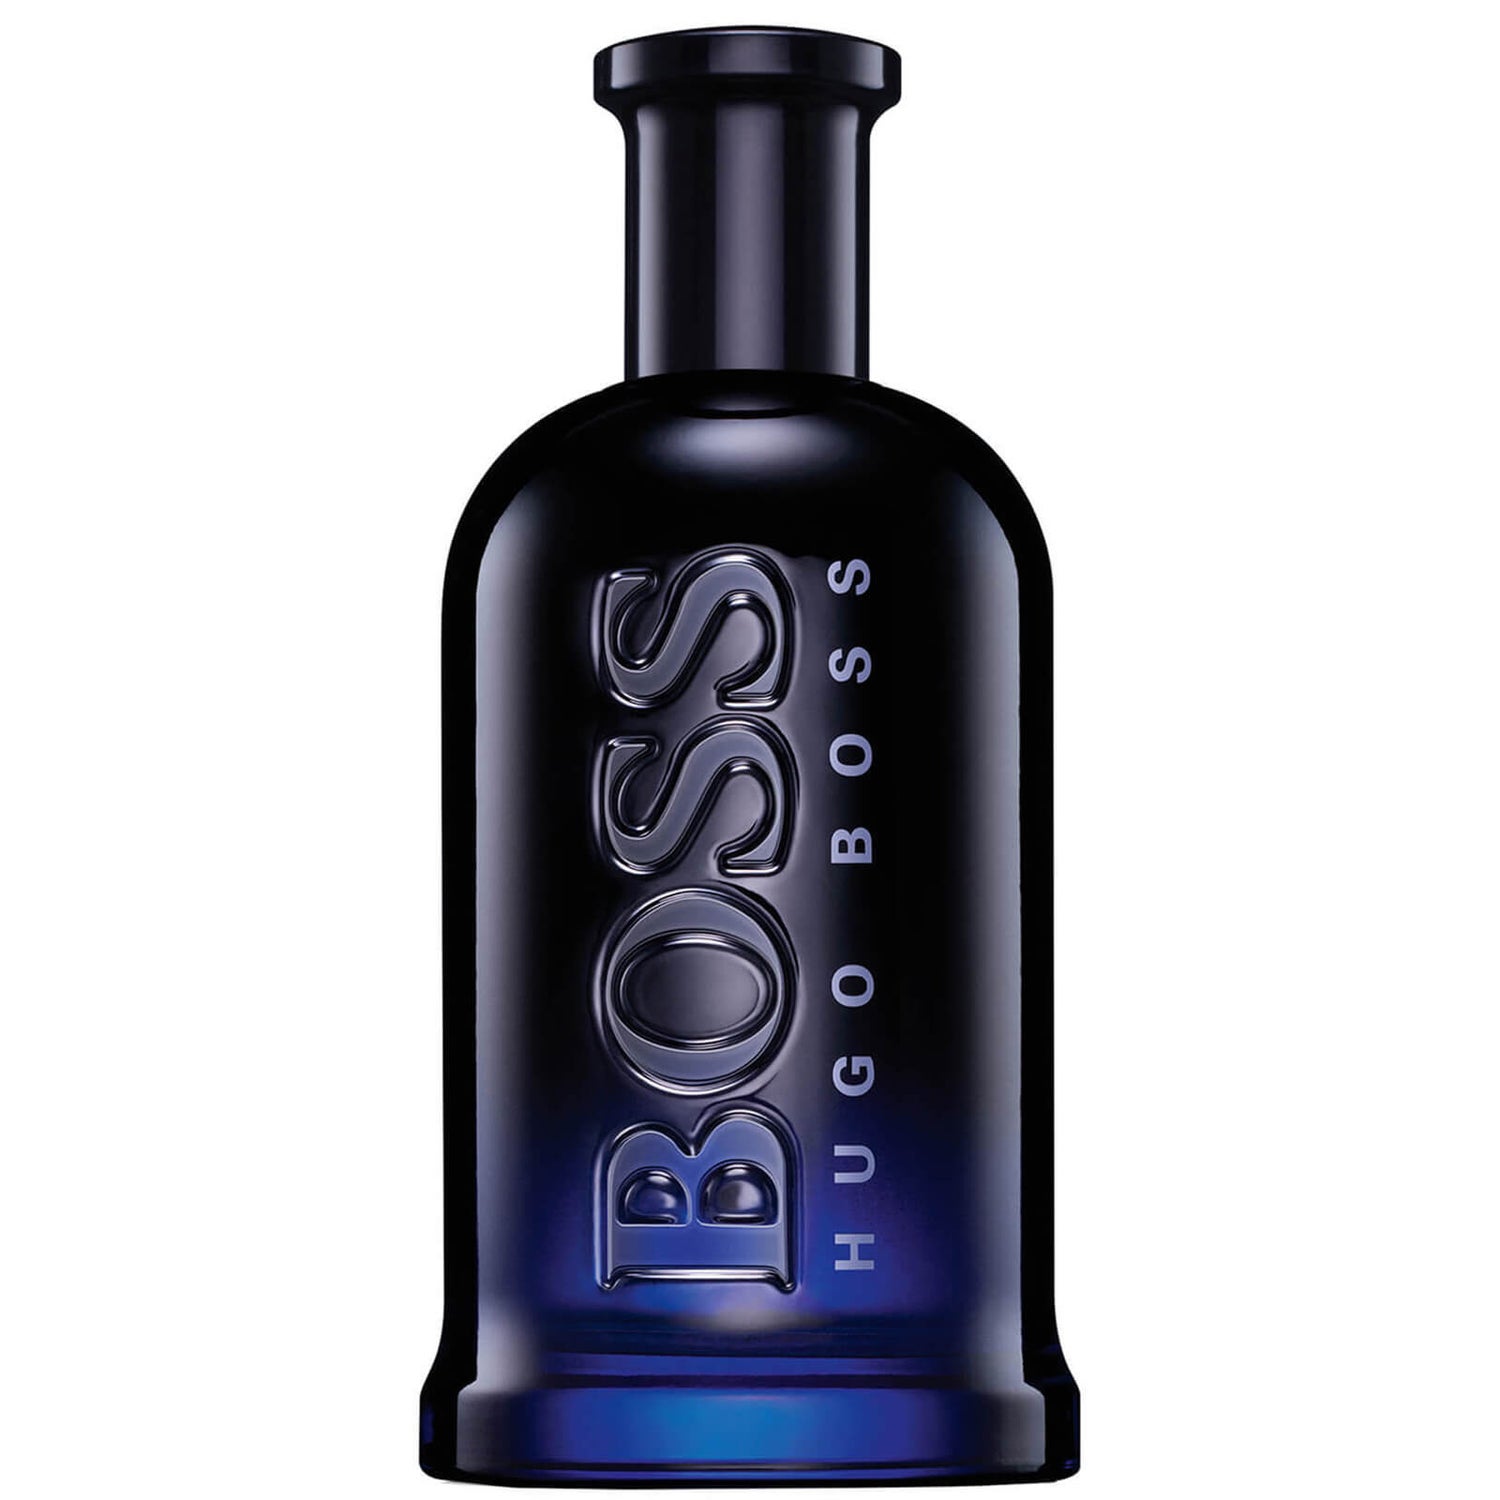 Eau de Toilette BOSS Bottled Night de Hugo Boss 200 ml